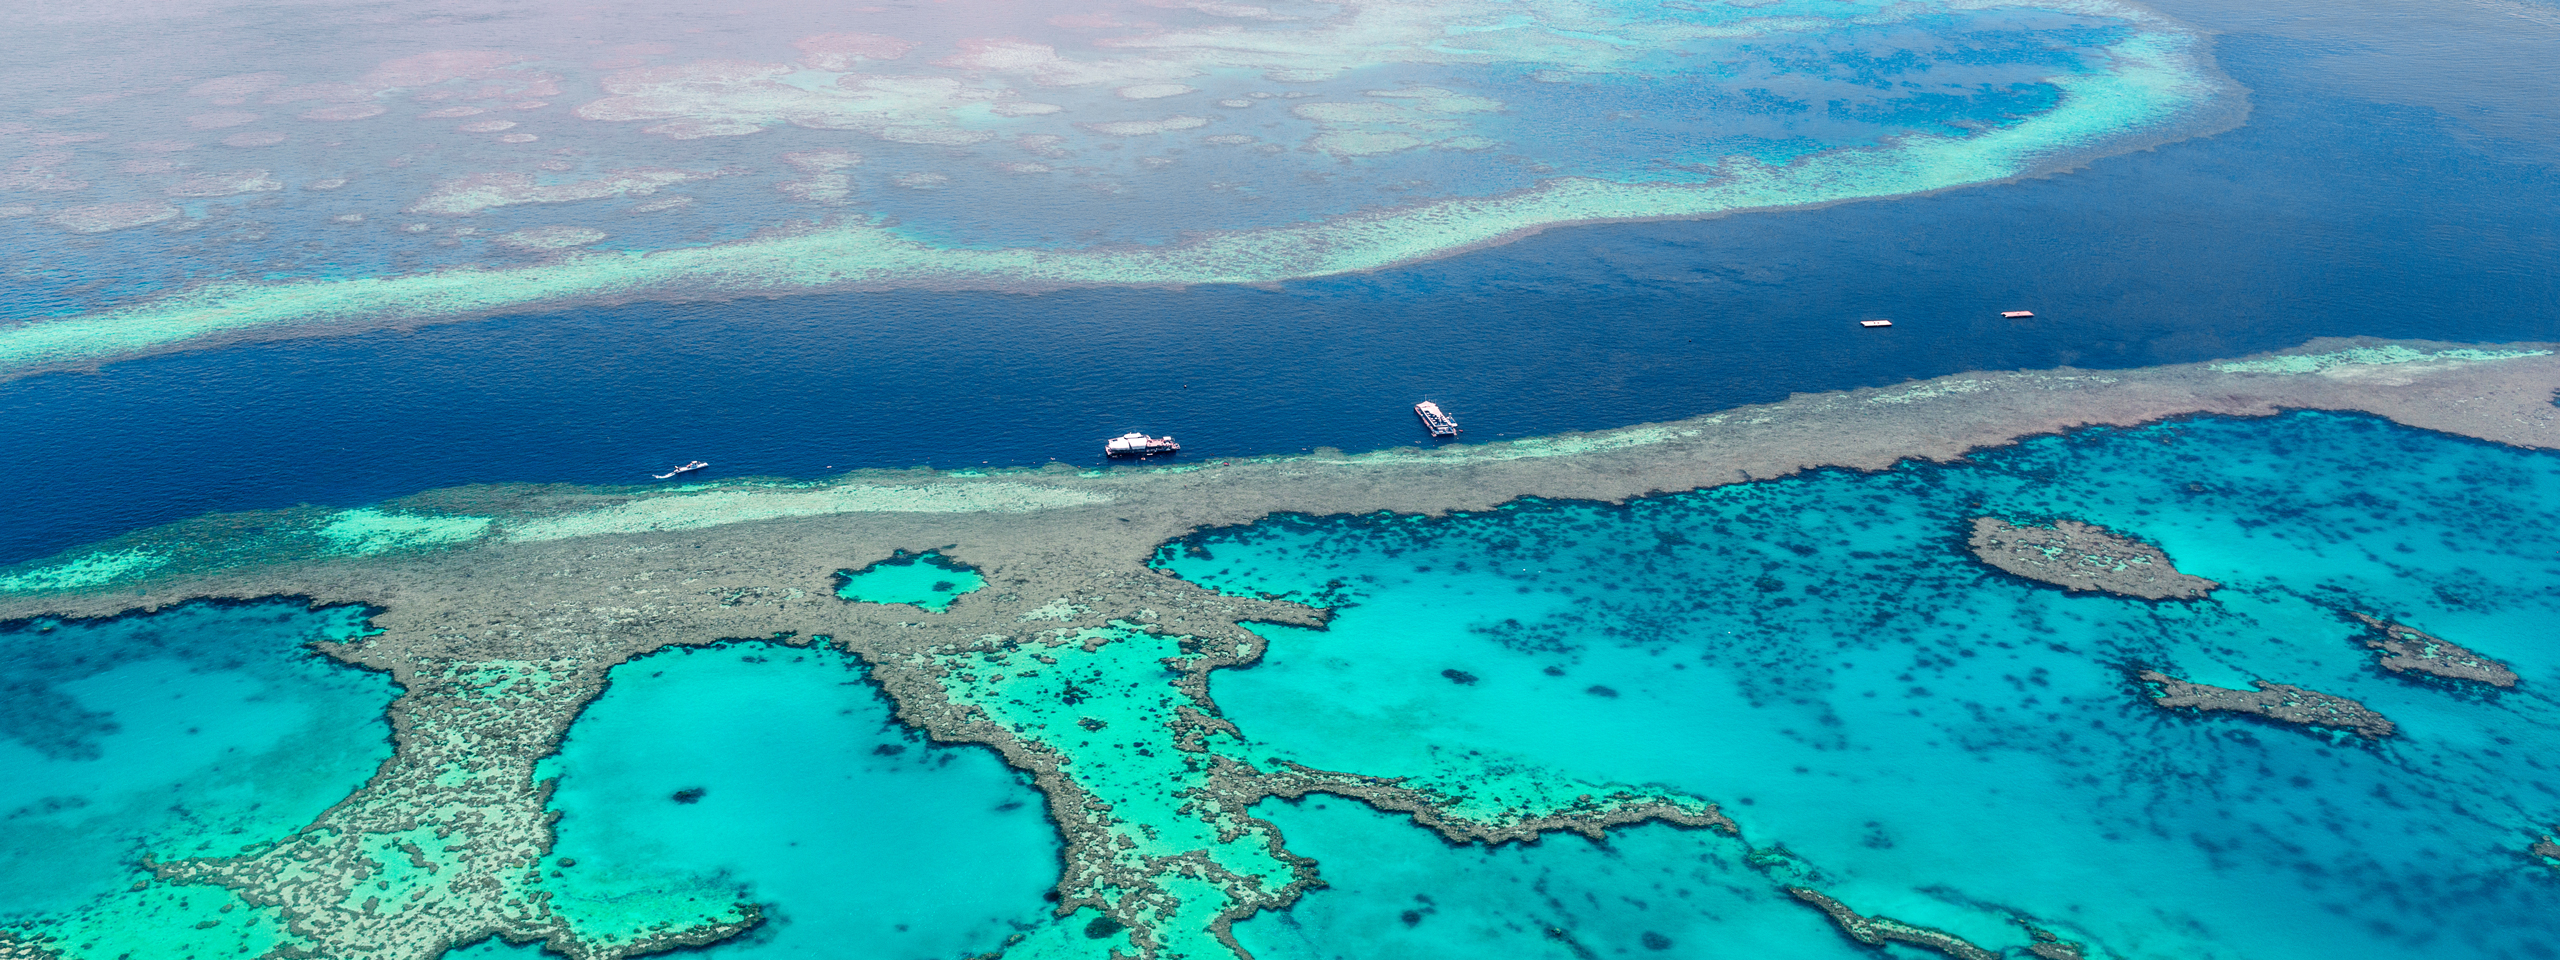 Great Barrier Reef, Queensland Australia